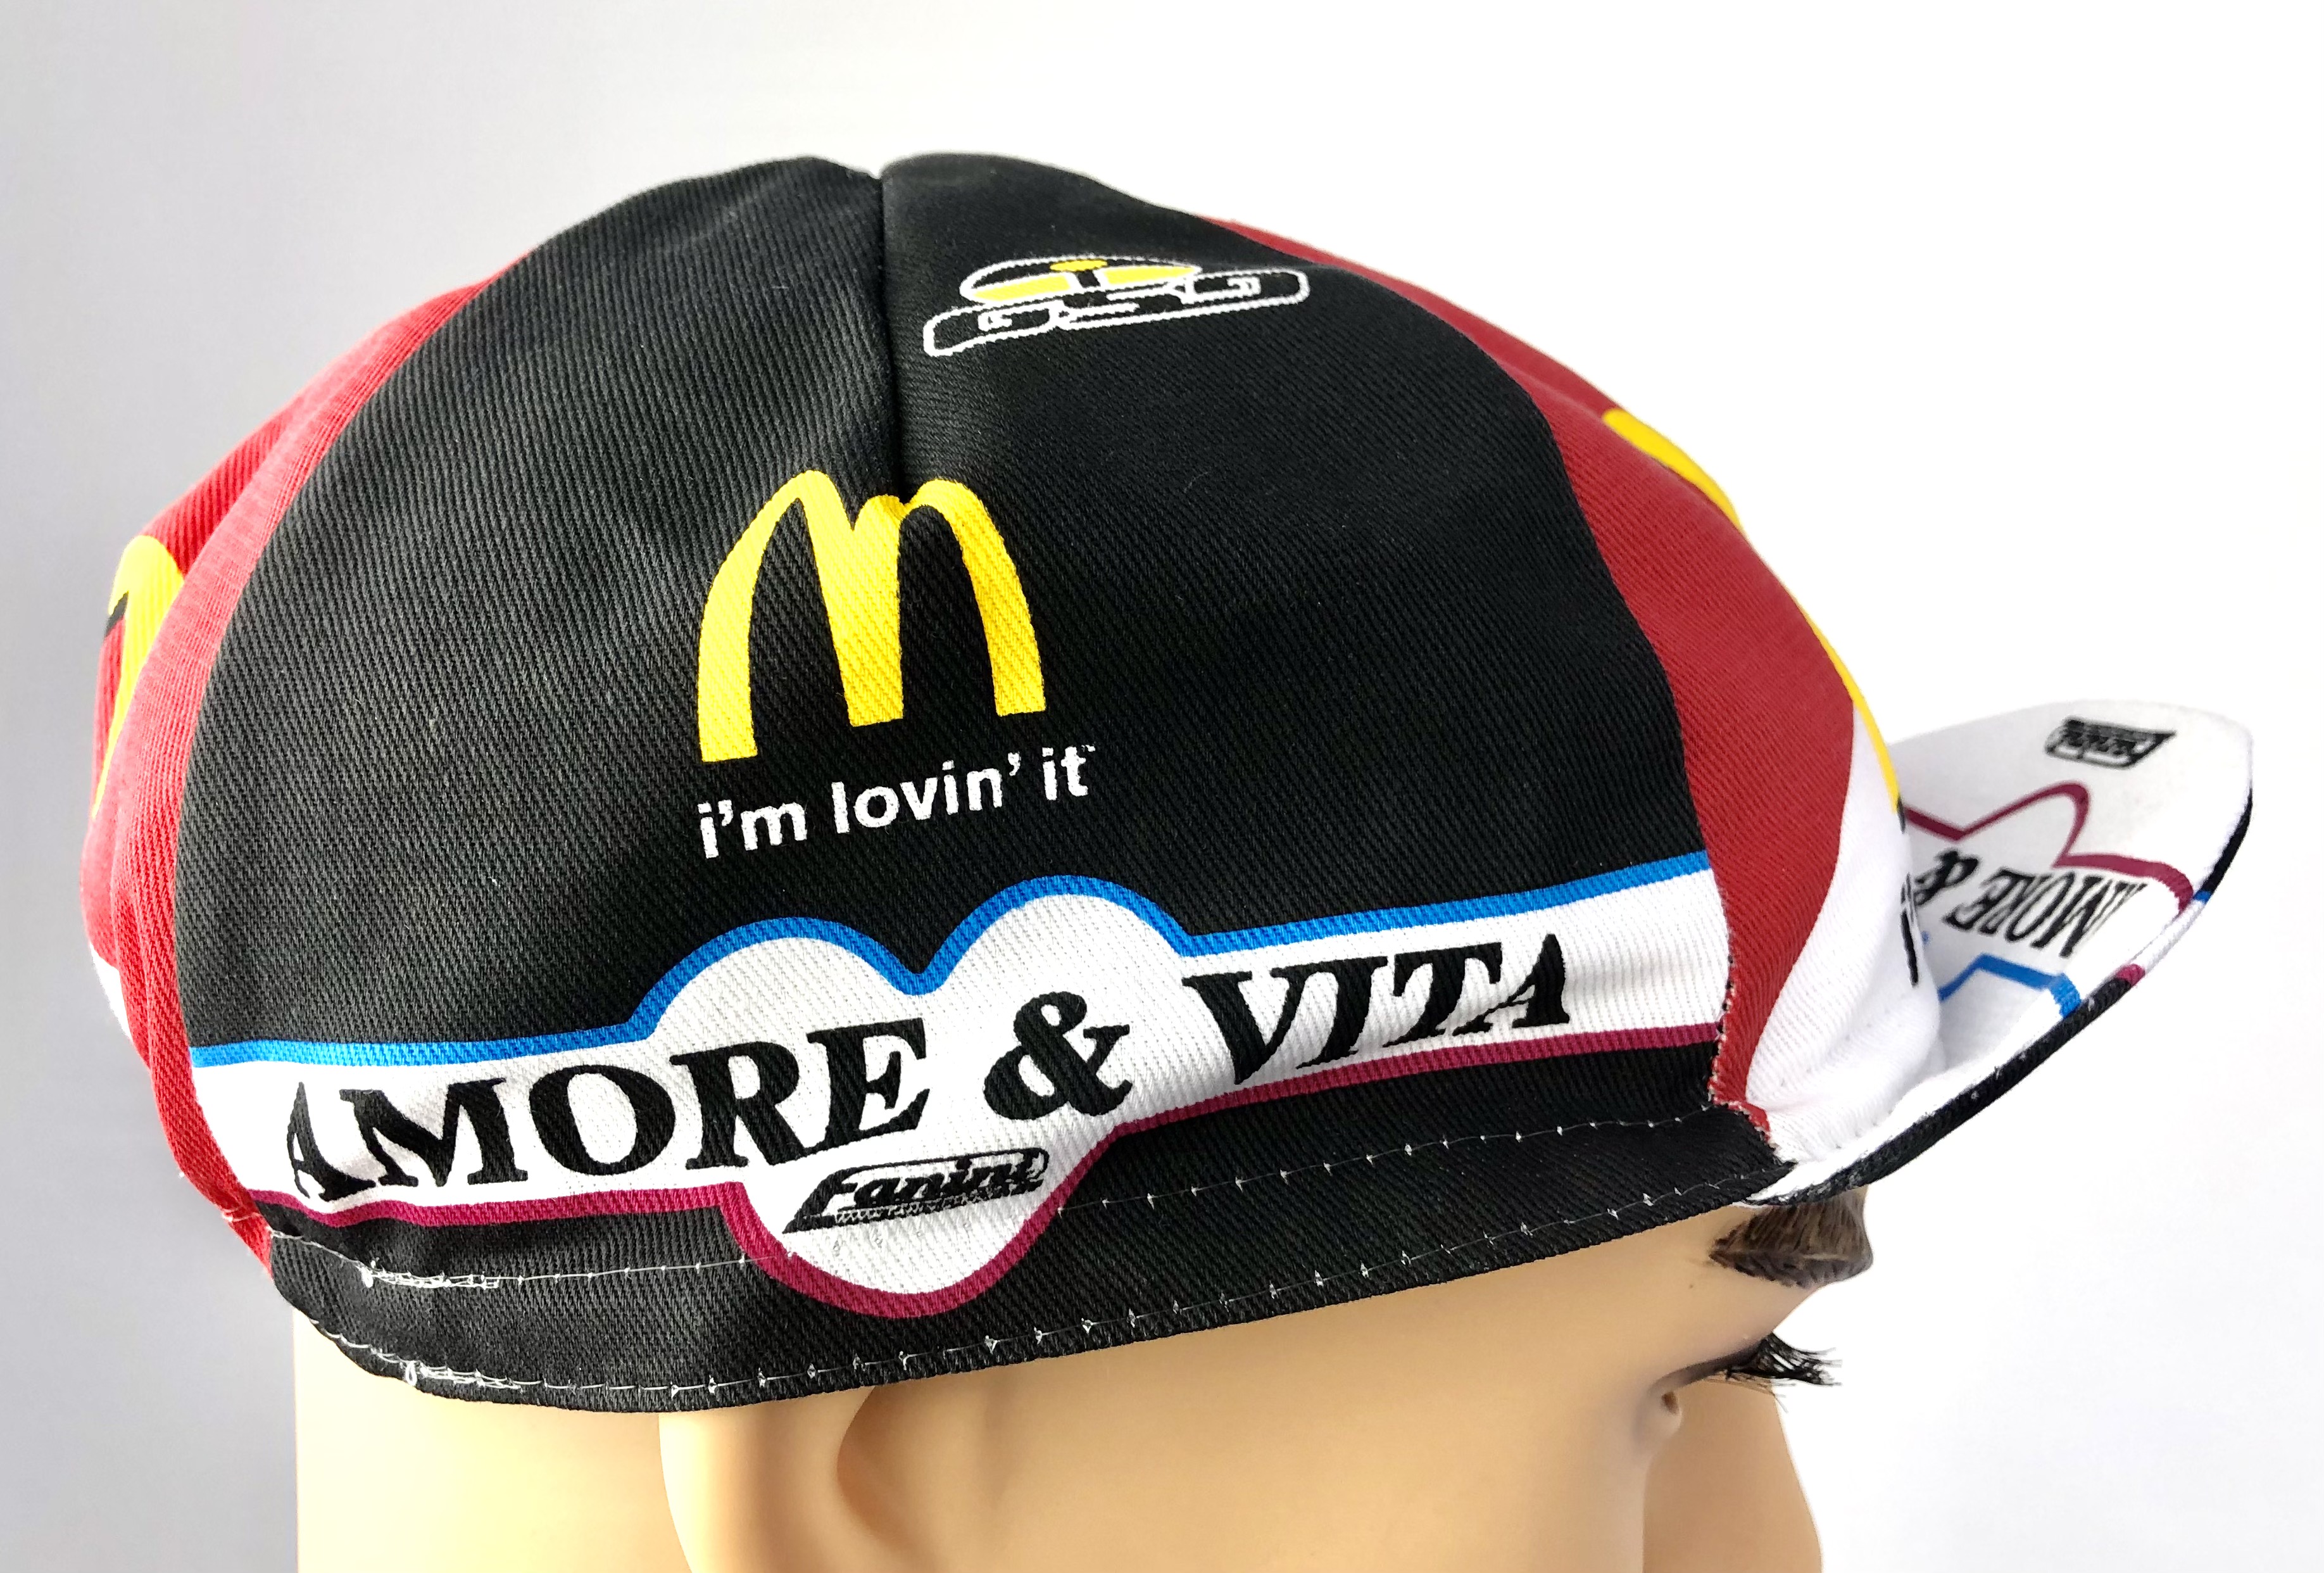 La Casquette Team Amore & Vita - McDonald's 